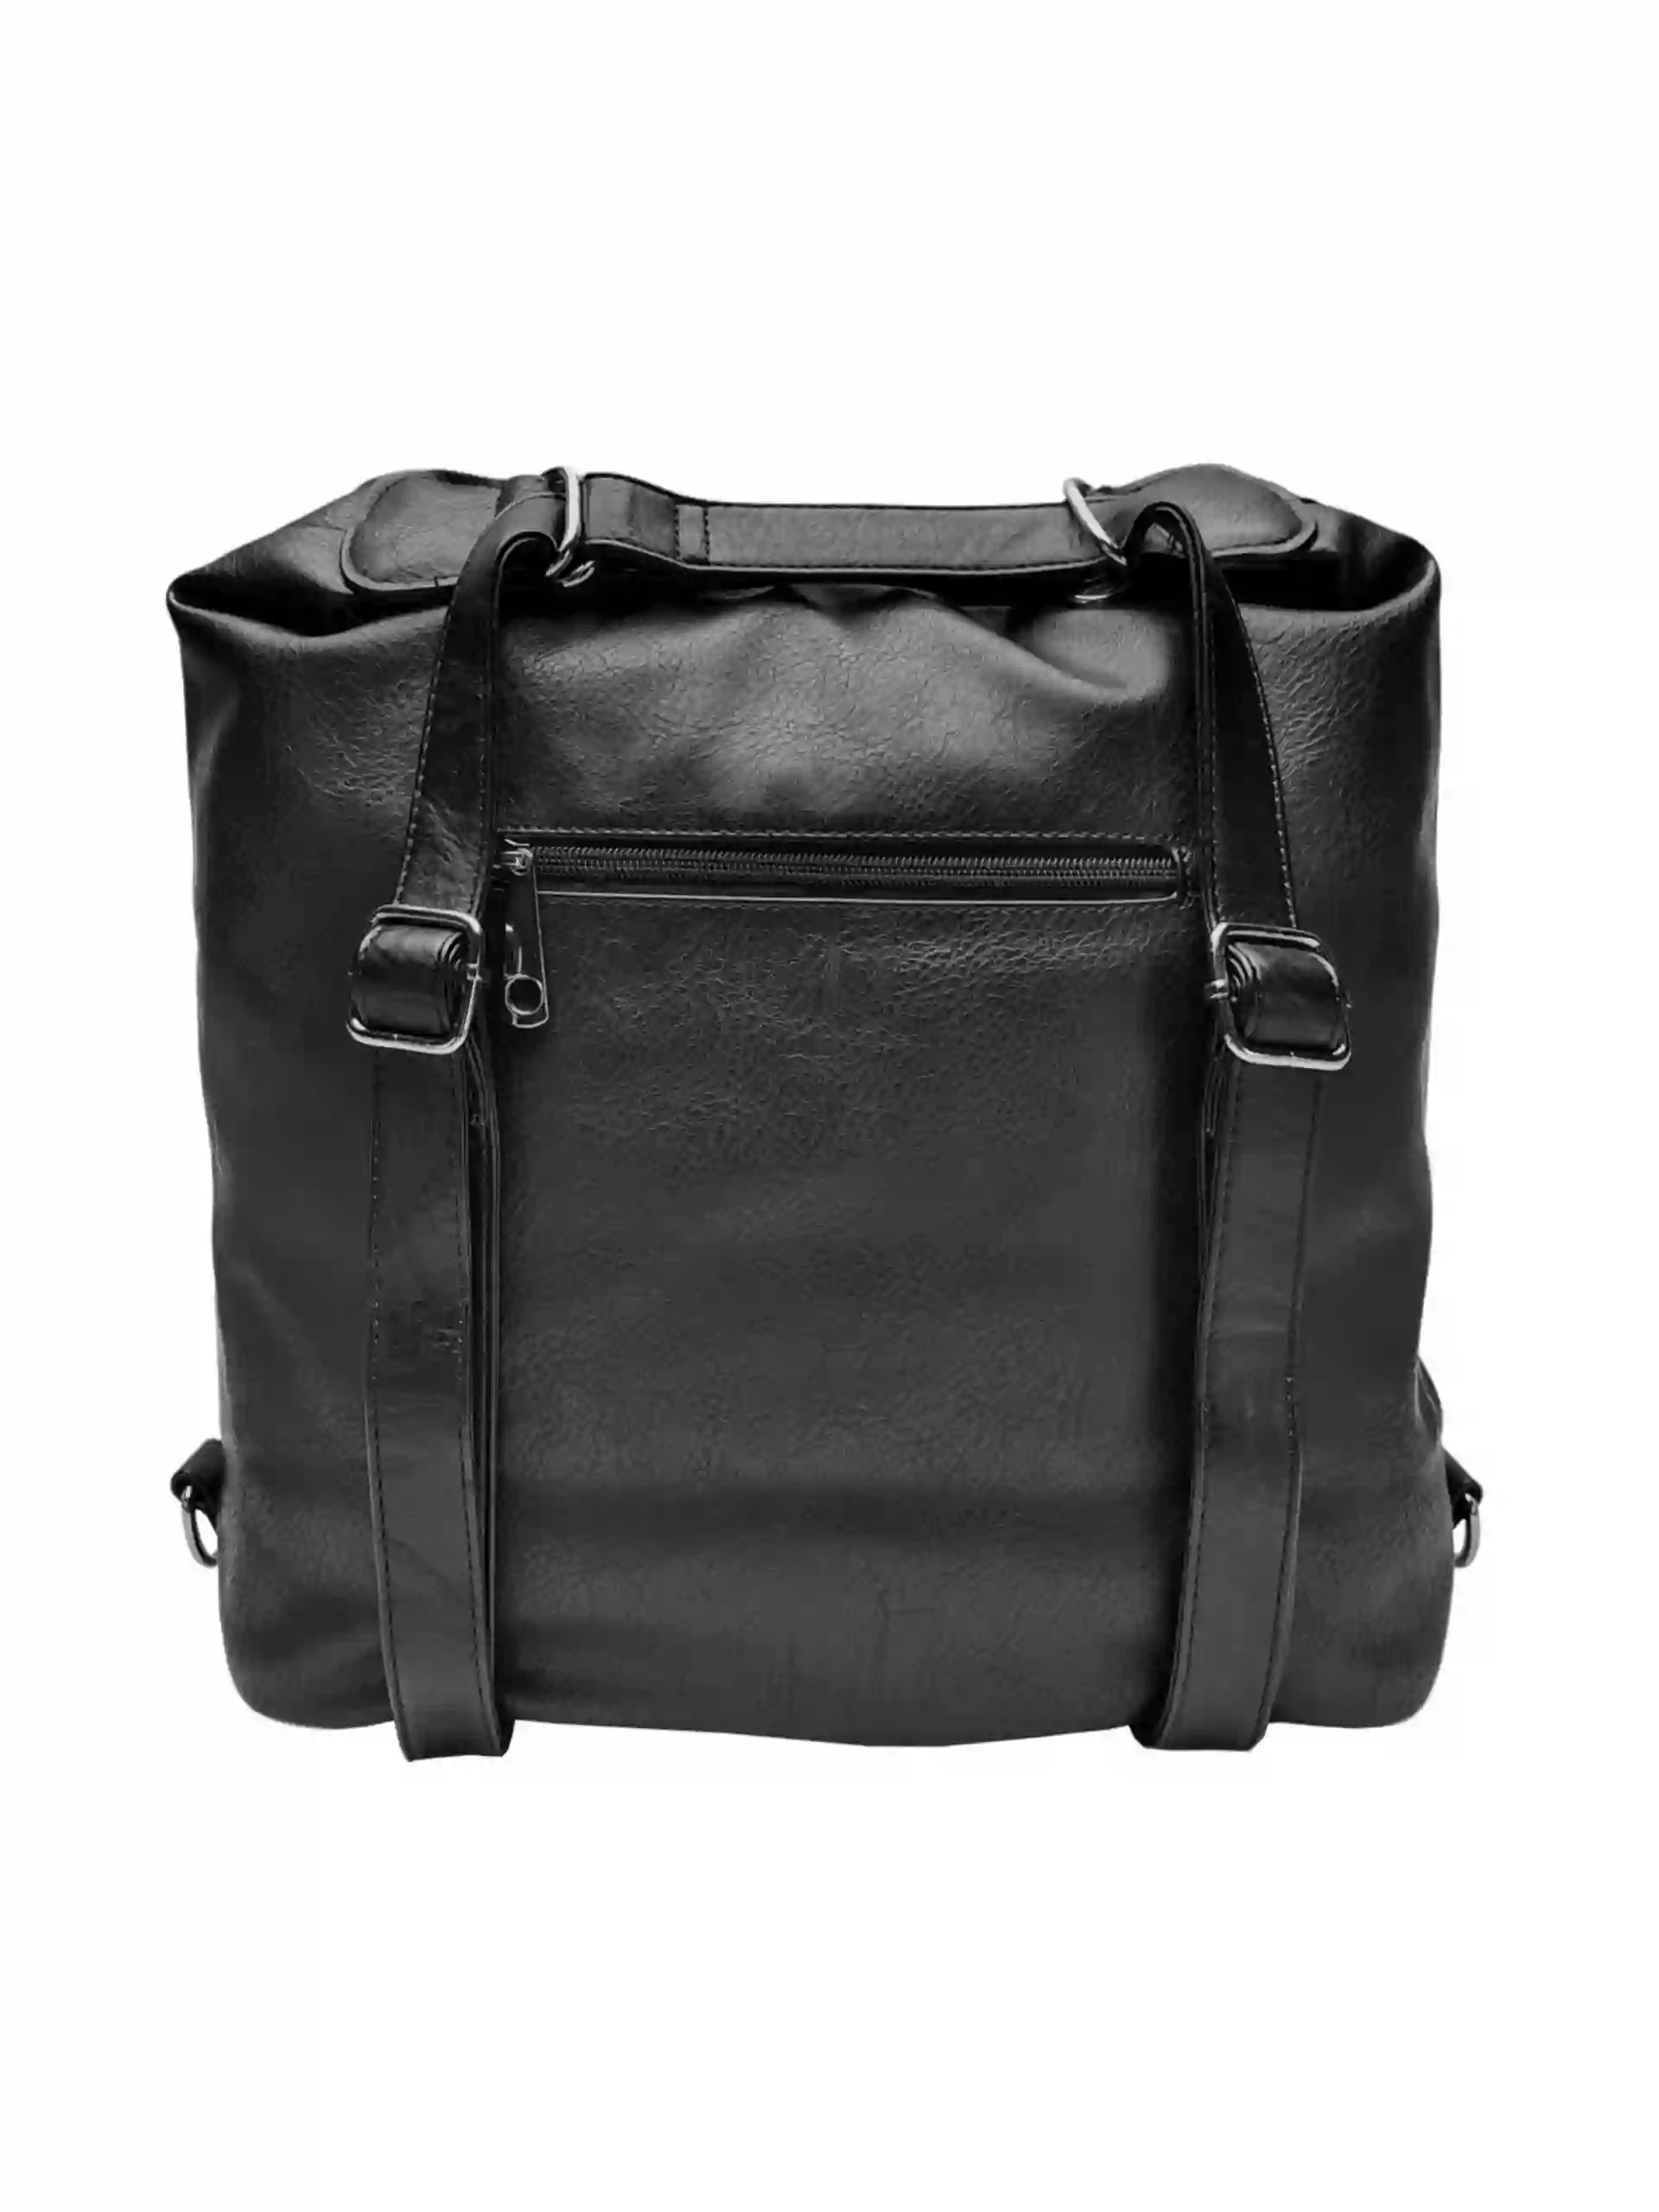 Velký černý kabelko-batoh 2v1 s praktickou kapsou, Tapple, H190010N+, zadní strana kabelko-batohu 2v1 s popruhy